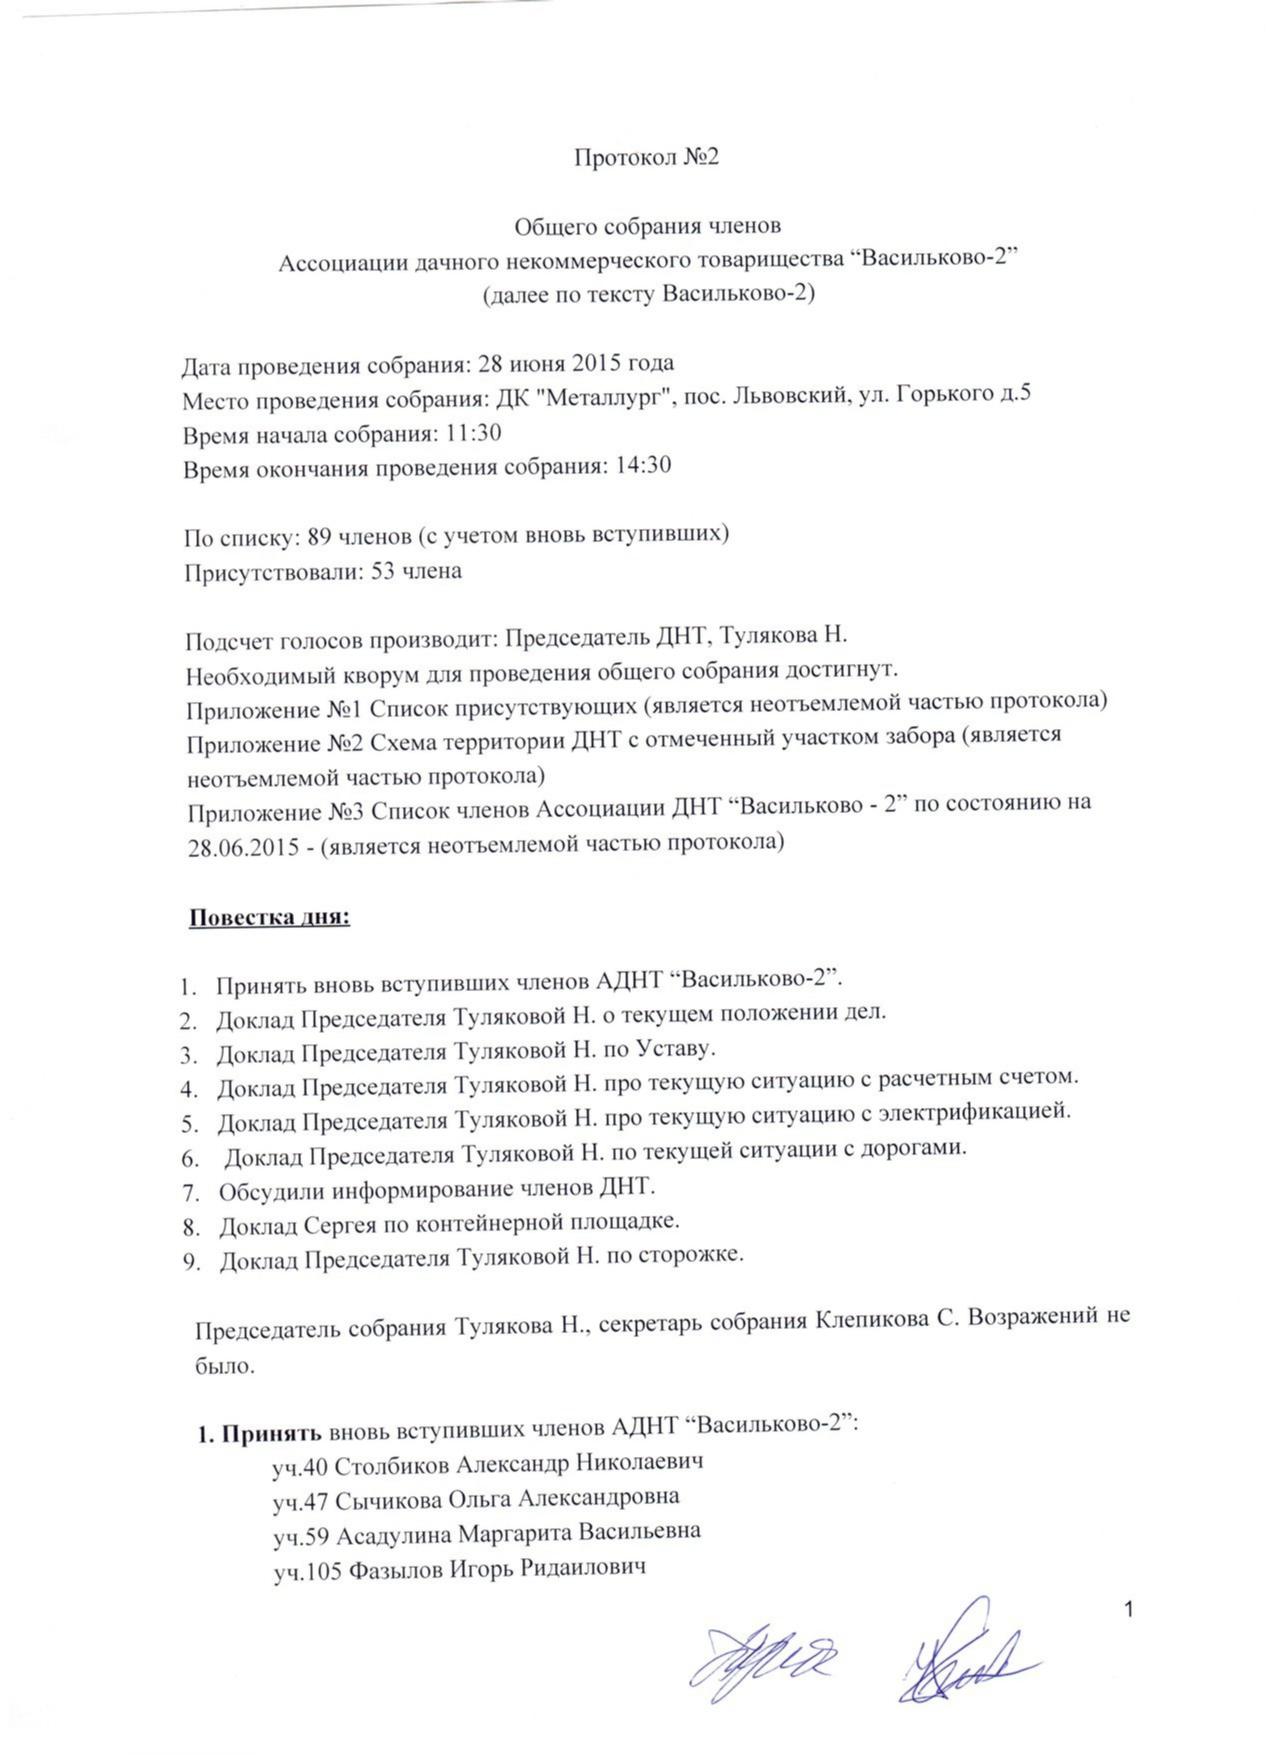 Протокол ОС 28.06.2015 страница 1